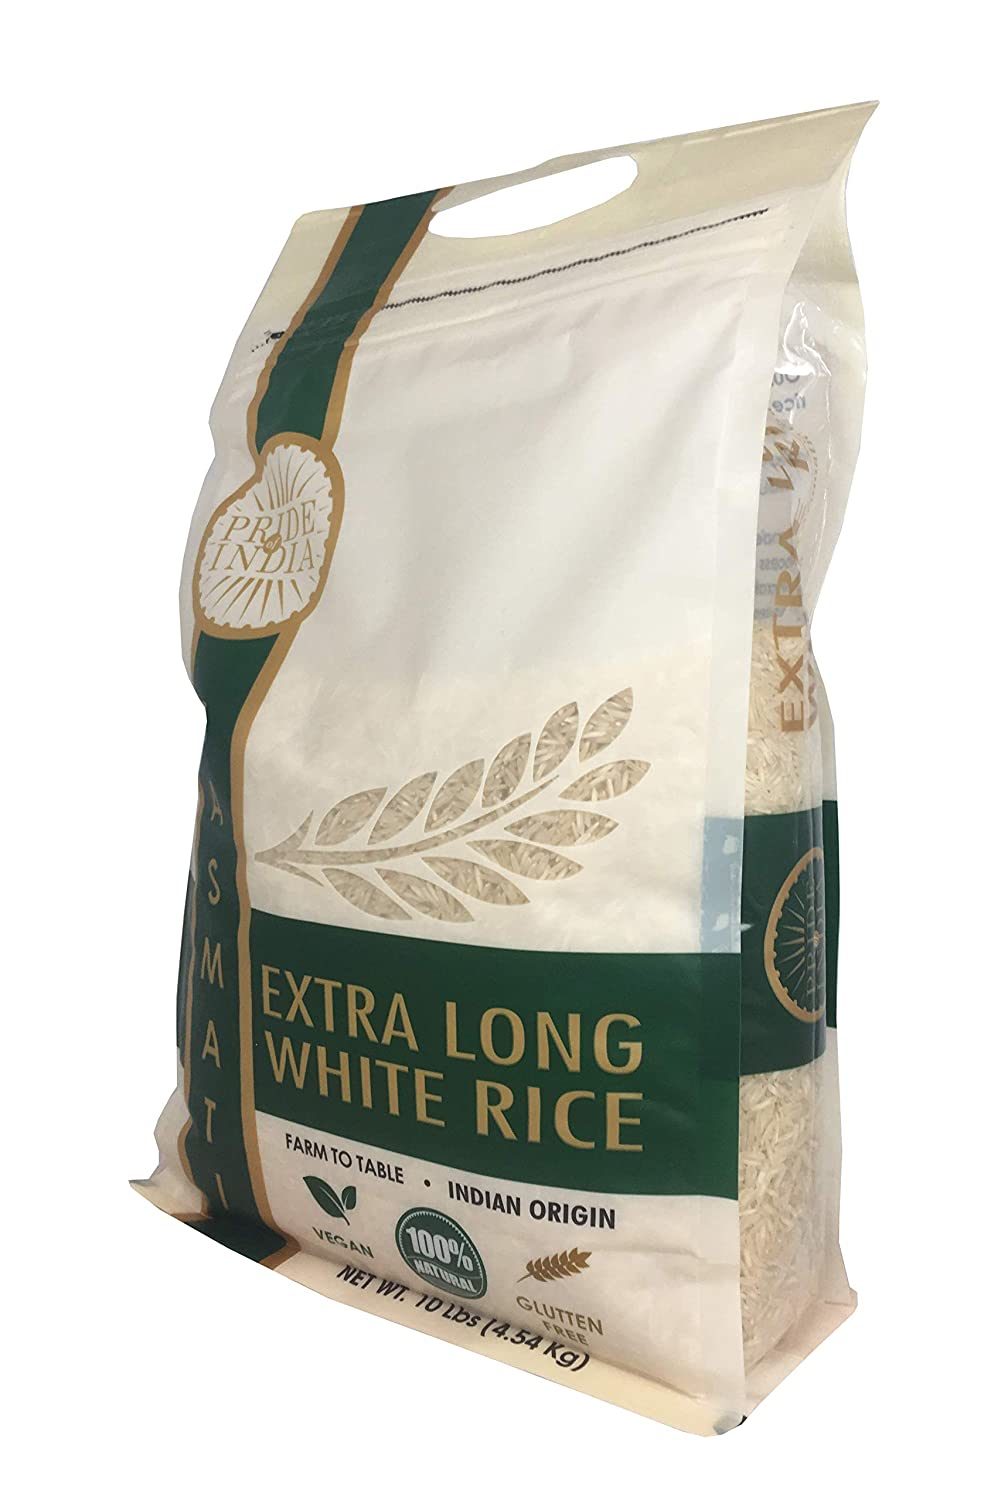 Extra Long White Basmati Rice 160 oz